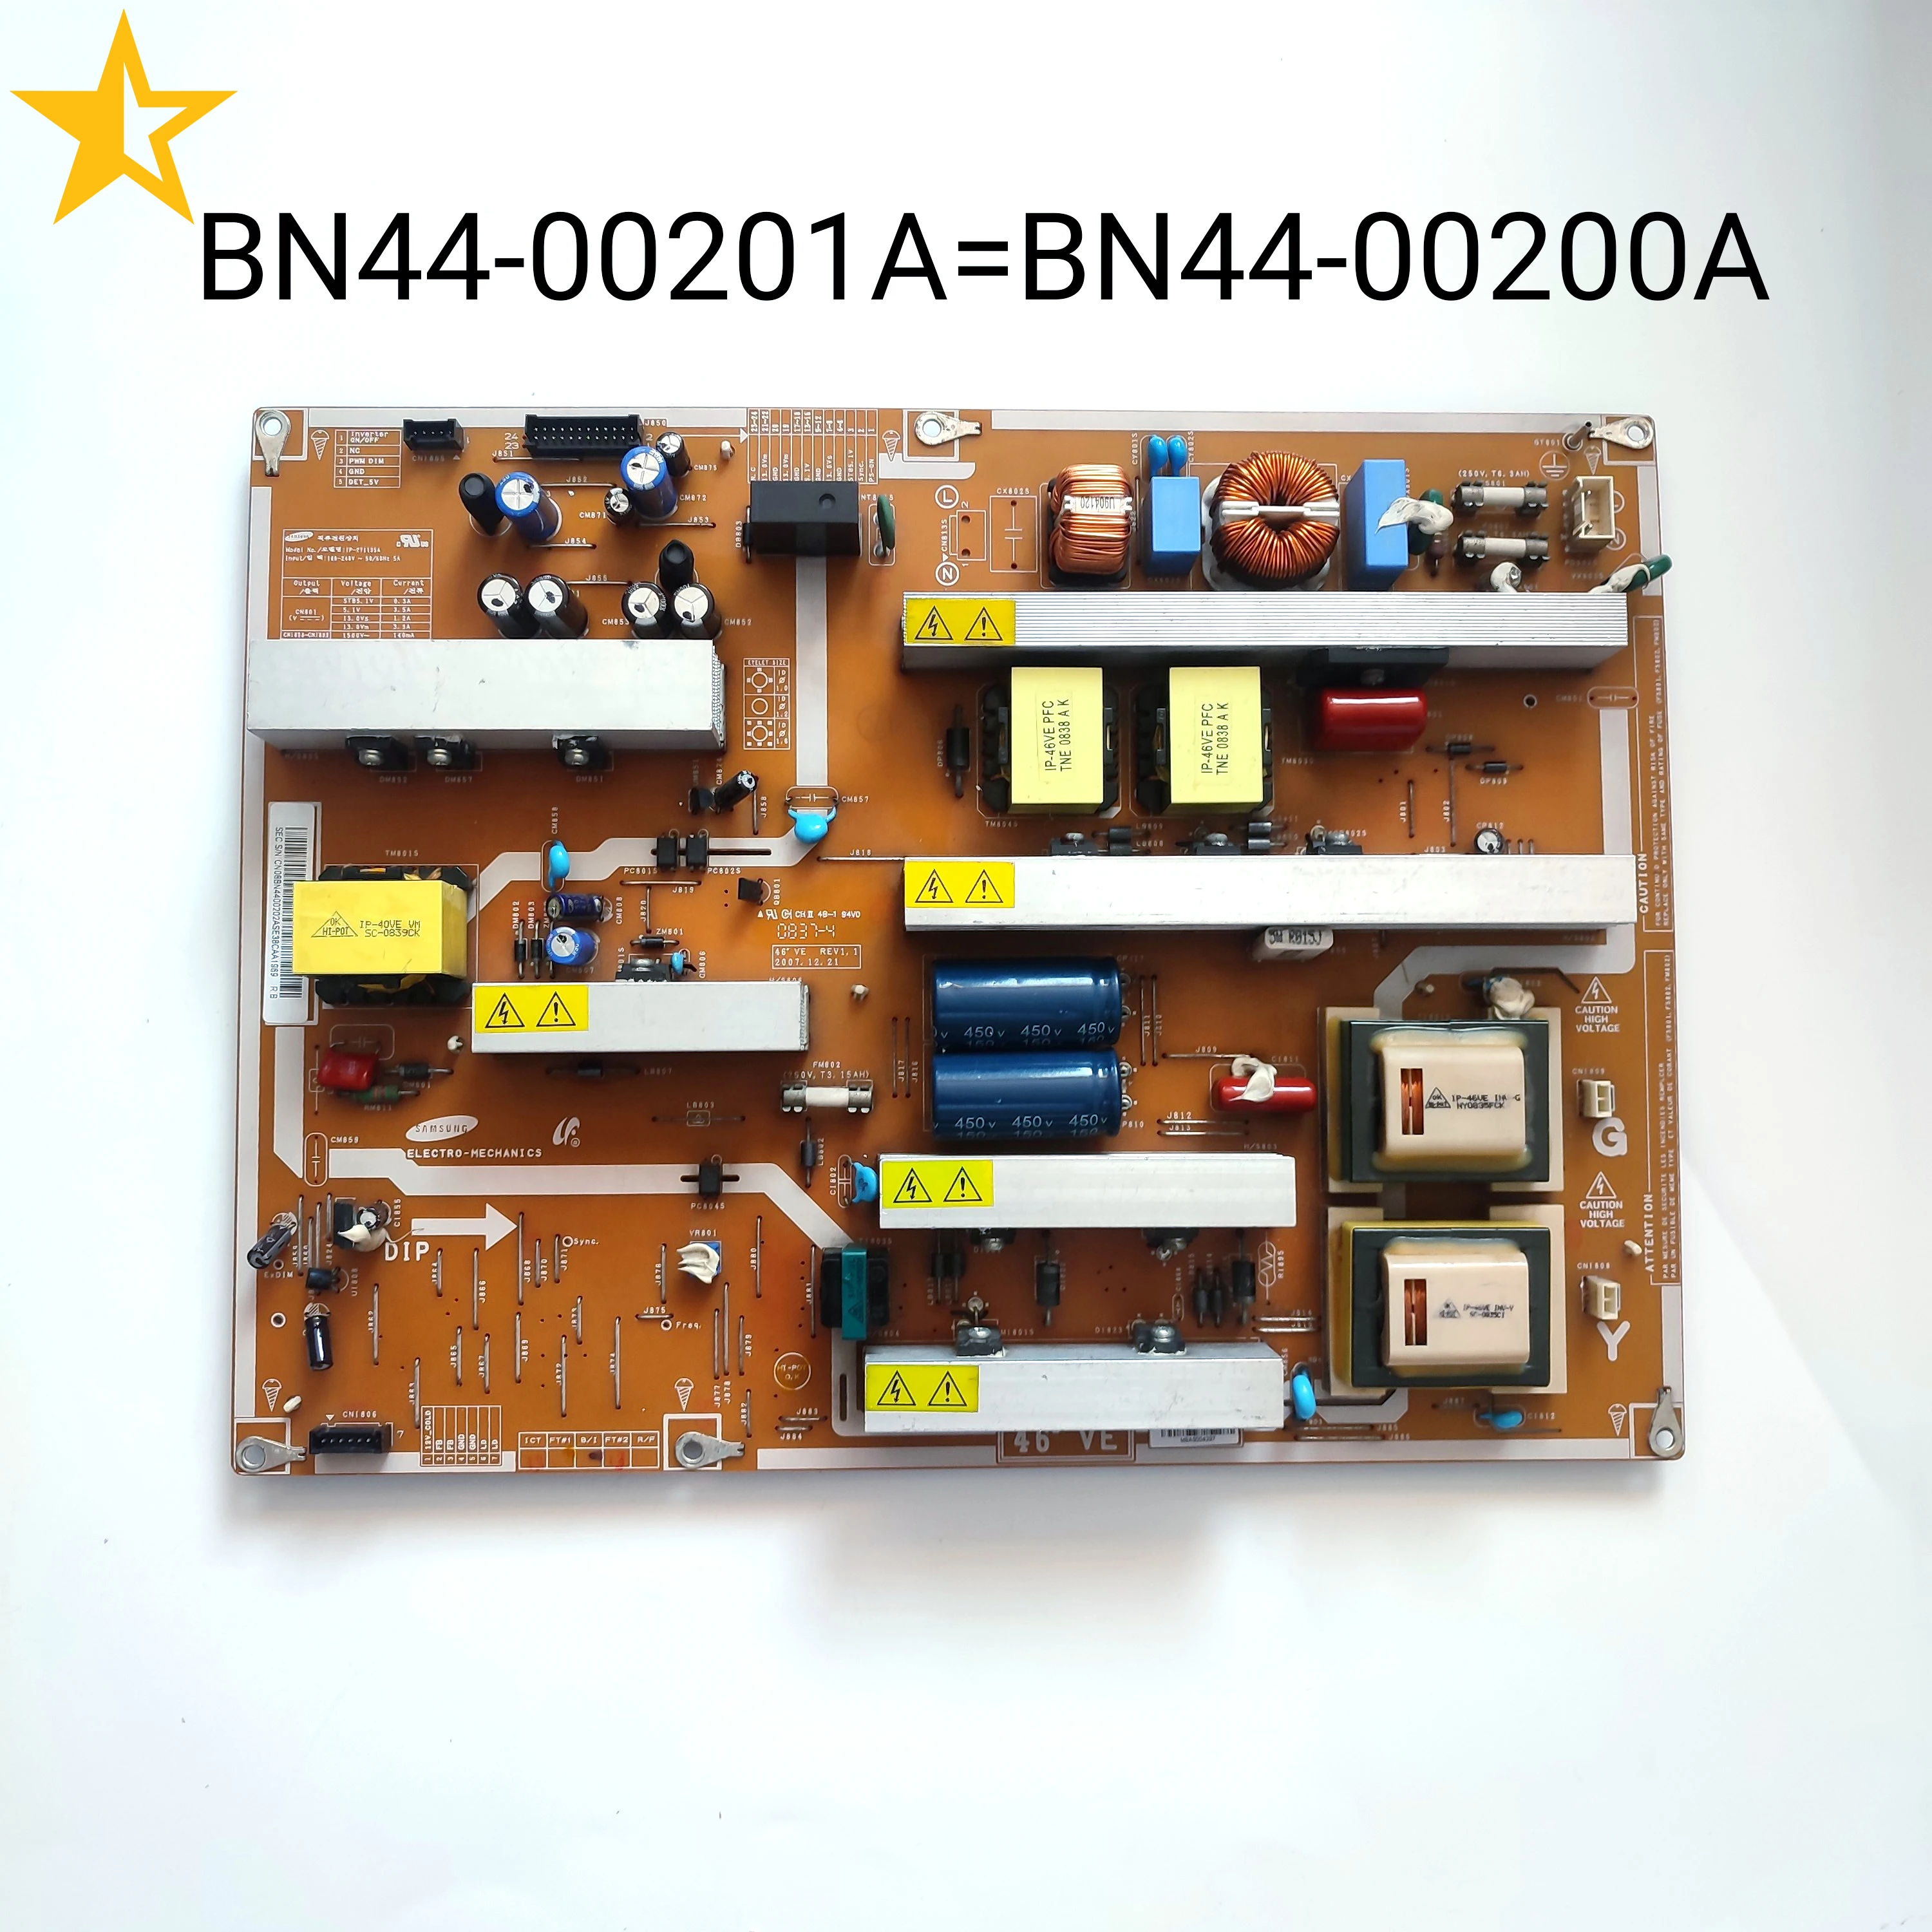 

BN44-00201A SIP528A = BN44-00200A IP-361135A Power Supply Board is for LN52A530P1F LN52A550P3F LN52A650A1F LN52A540P2F 52" TV